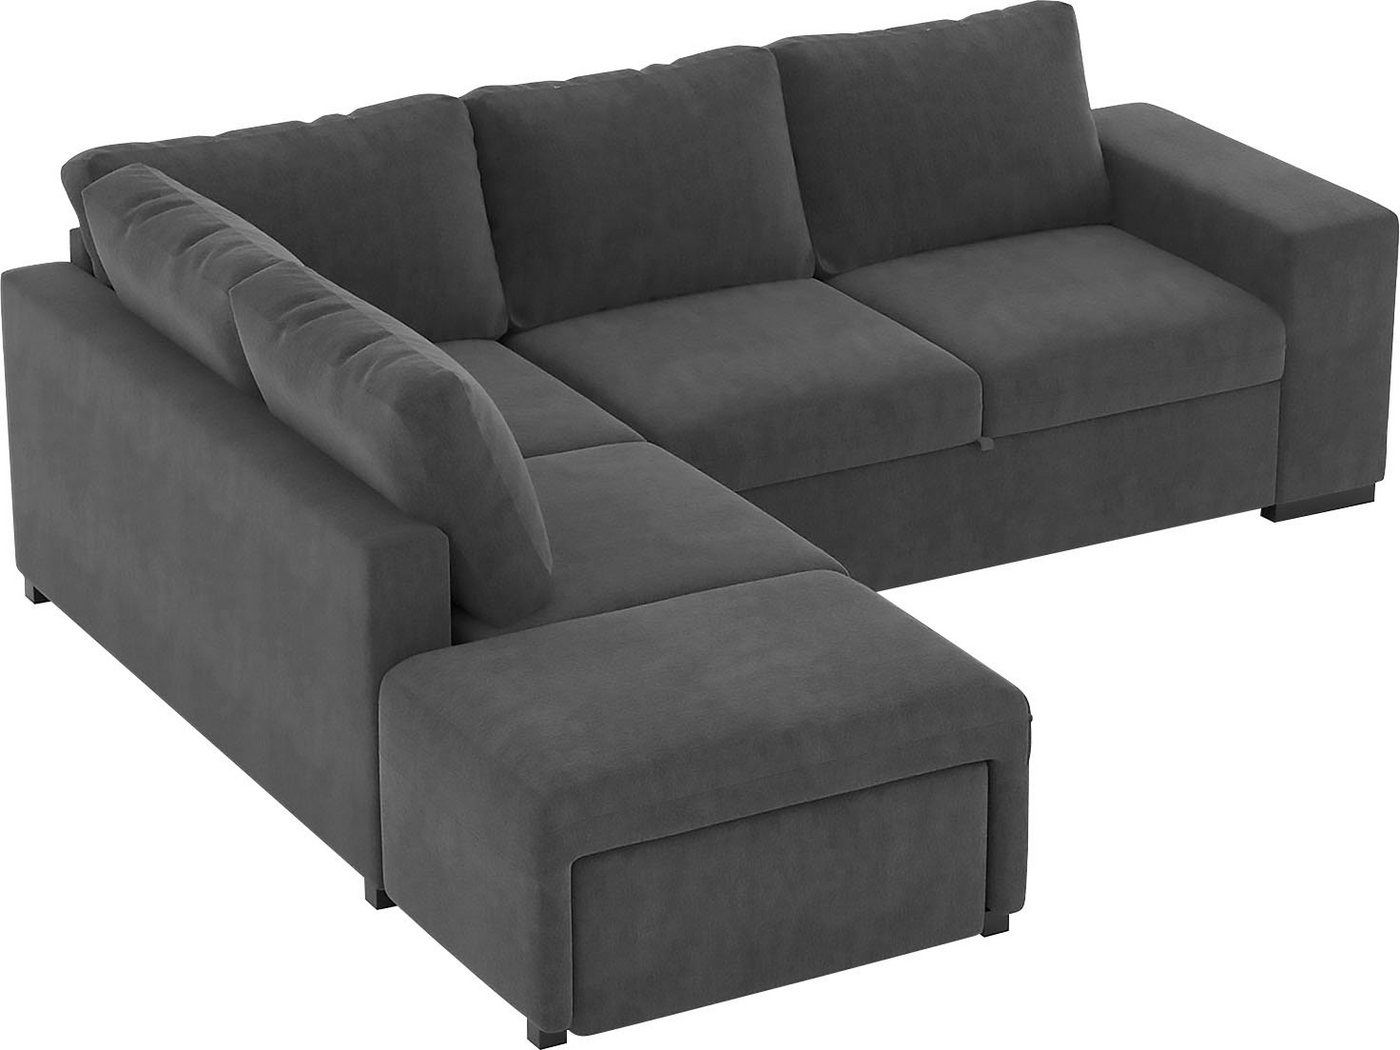 Places of Style Big-Sofa »Jozzis«, 1 Teile, mit manuell verstellbaren Funktionen, integrierte Bettfunktion, inklusive eines Regal und einem Stauraumfach zum aufklappen-kaufen